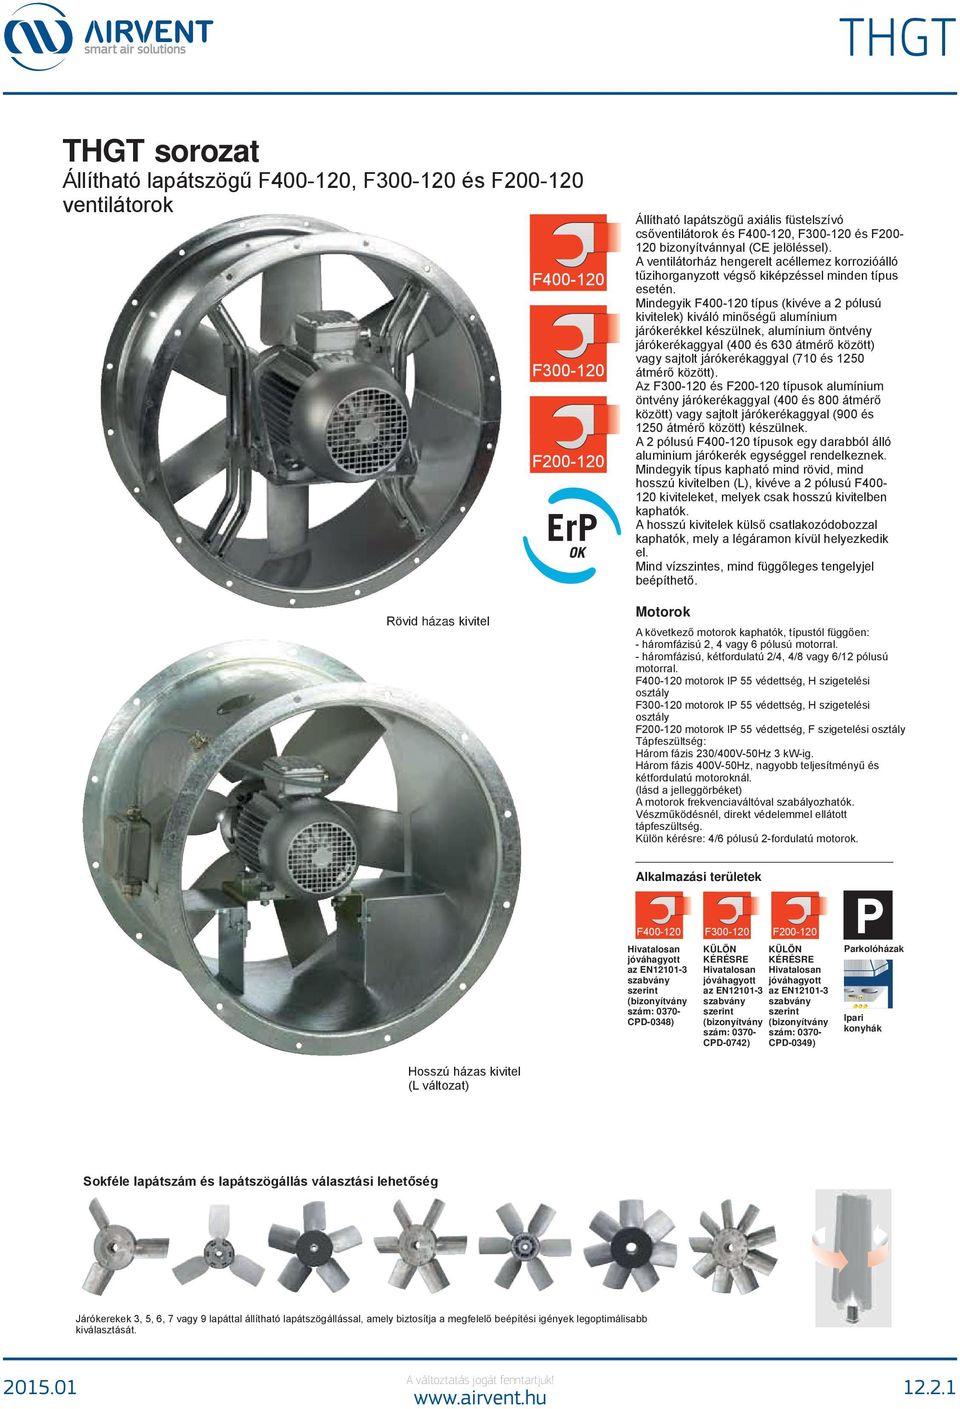 THGT. THGT sorozat Állítható lapátszögű F , F és F ventilátorok F F F  Motorok - PDF Free Download